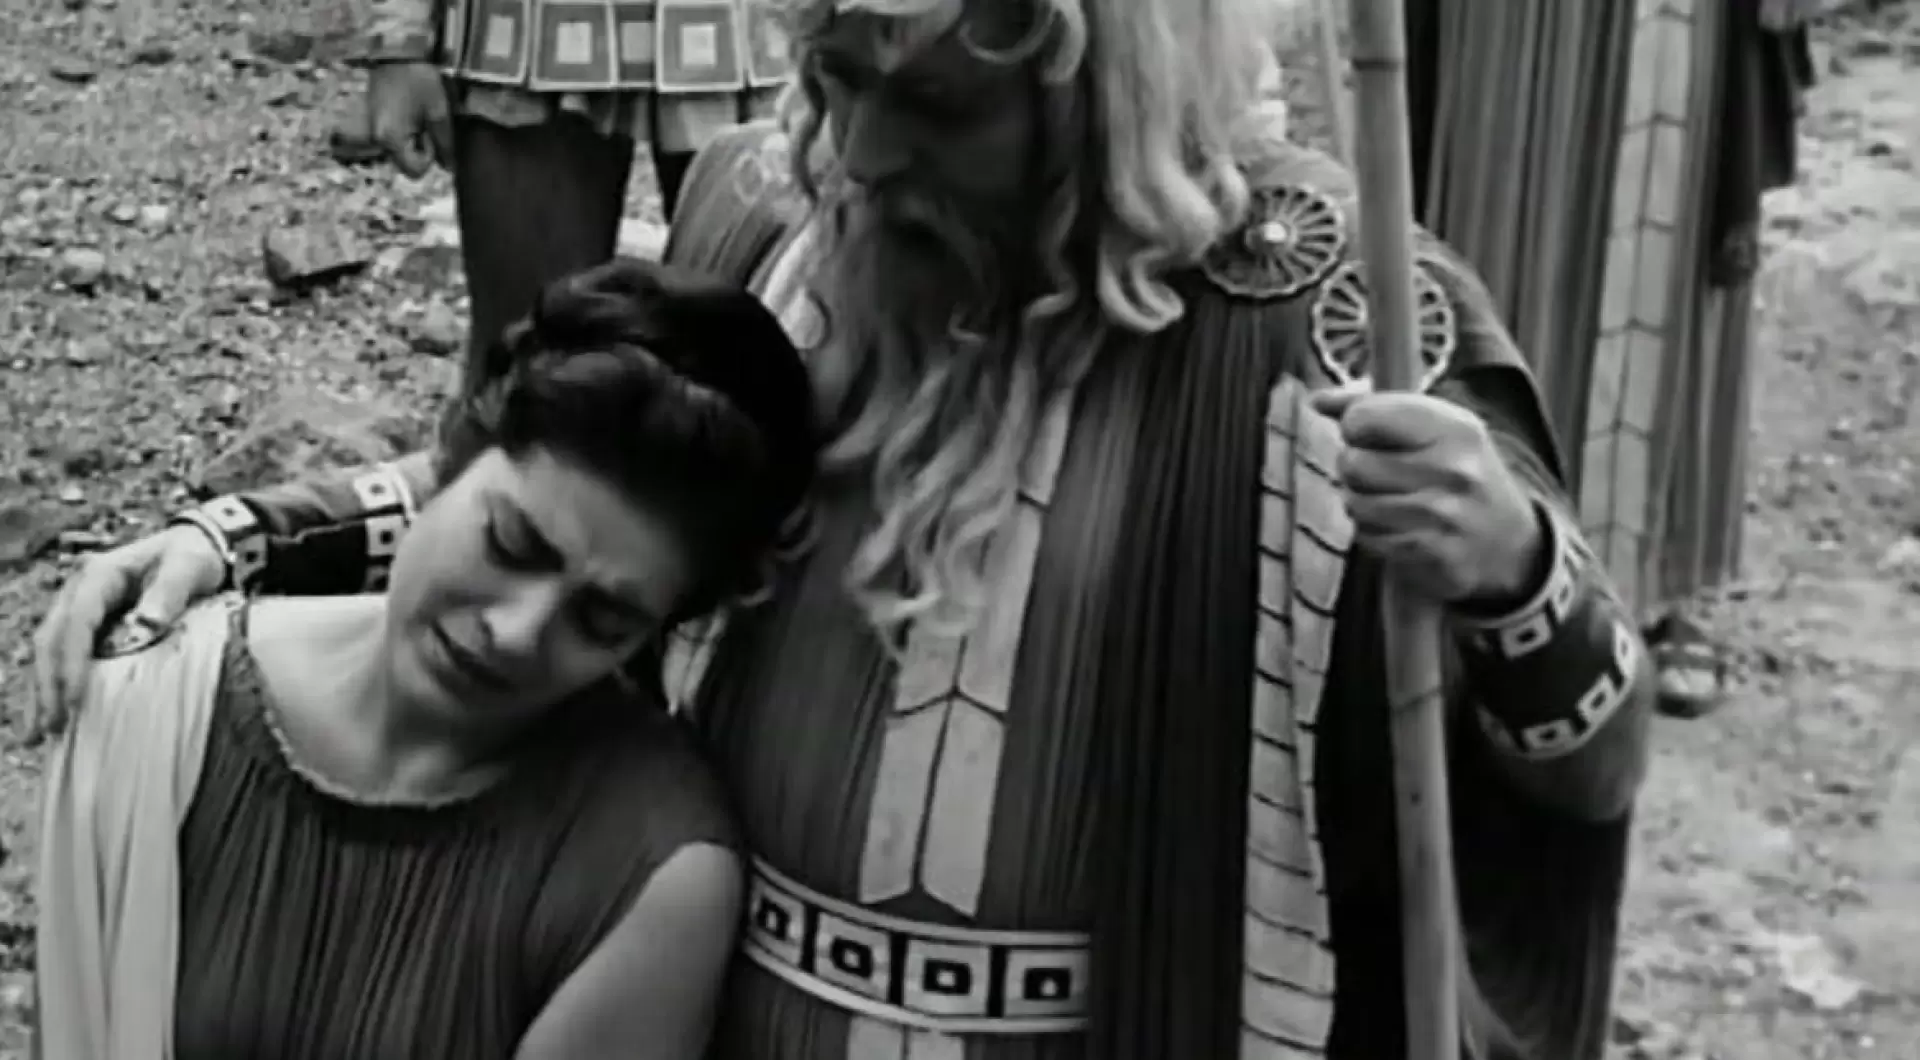 دانلود فیلم Antigone 1961